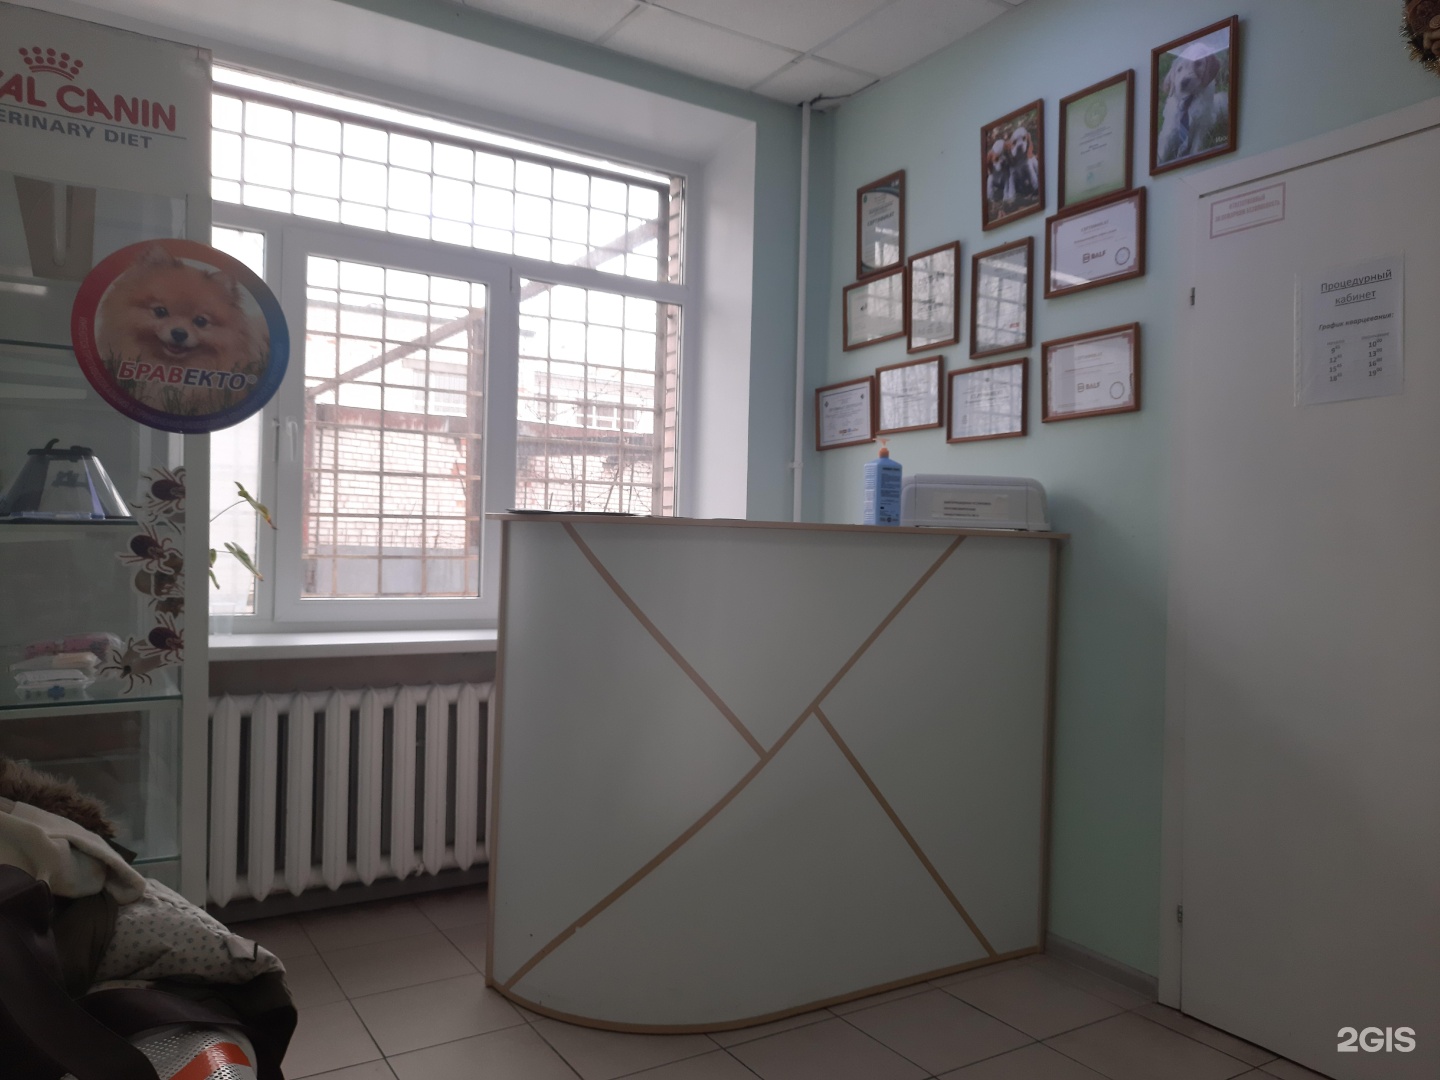 Тухачевского 41 паспортный стол. Ветеринарка на Маршала Тухачевского. Ветеринарная клиника Маршала Кузнецова д.12.